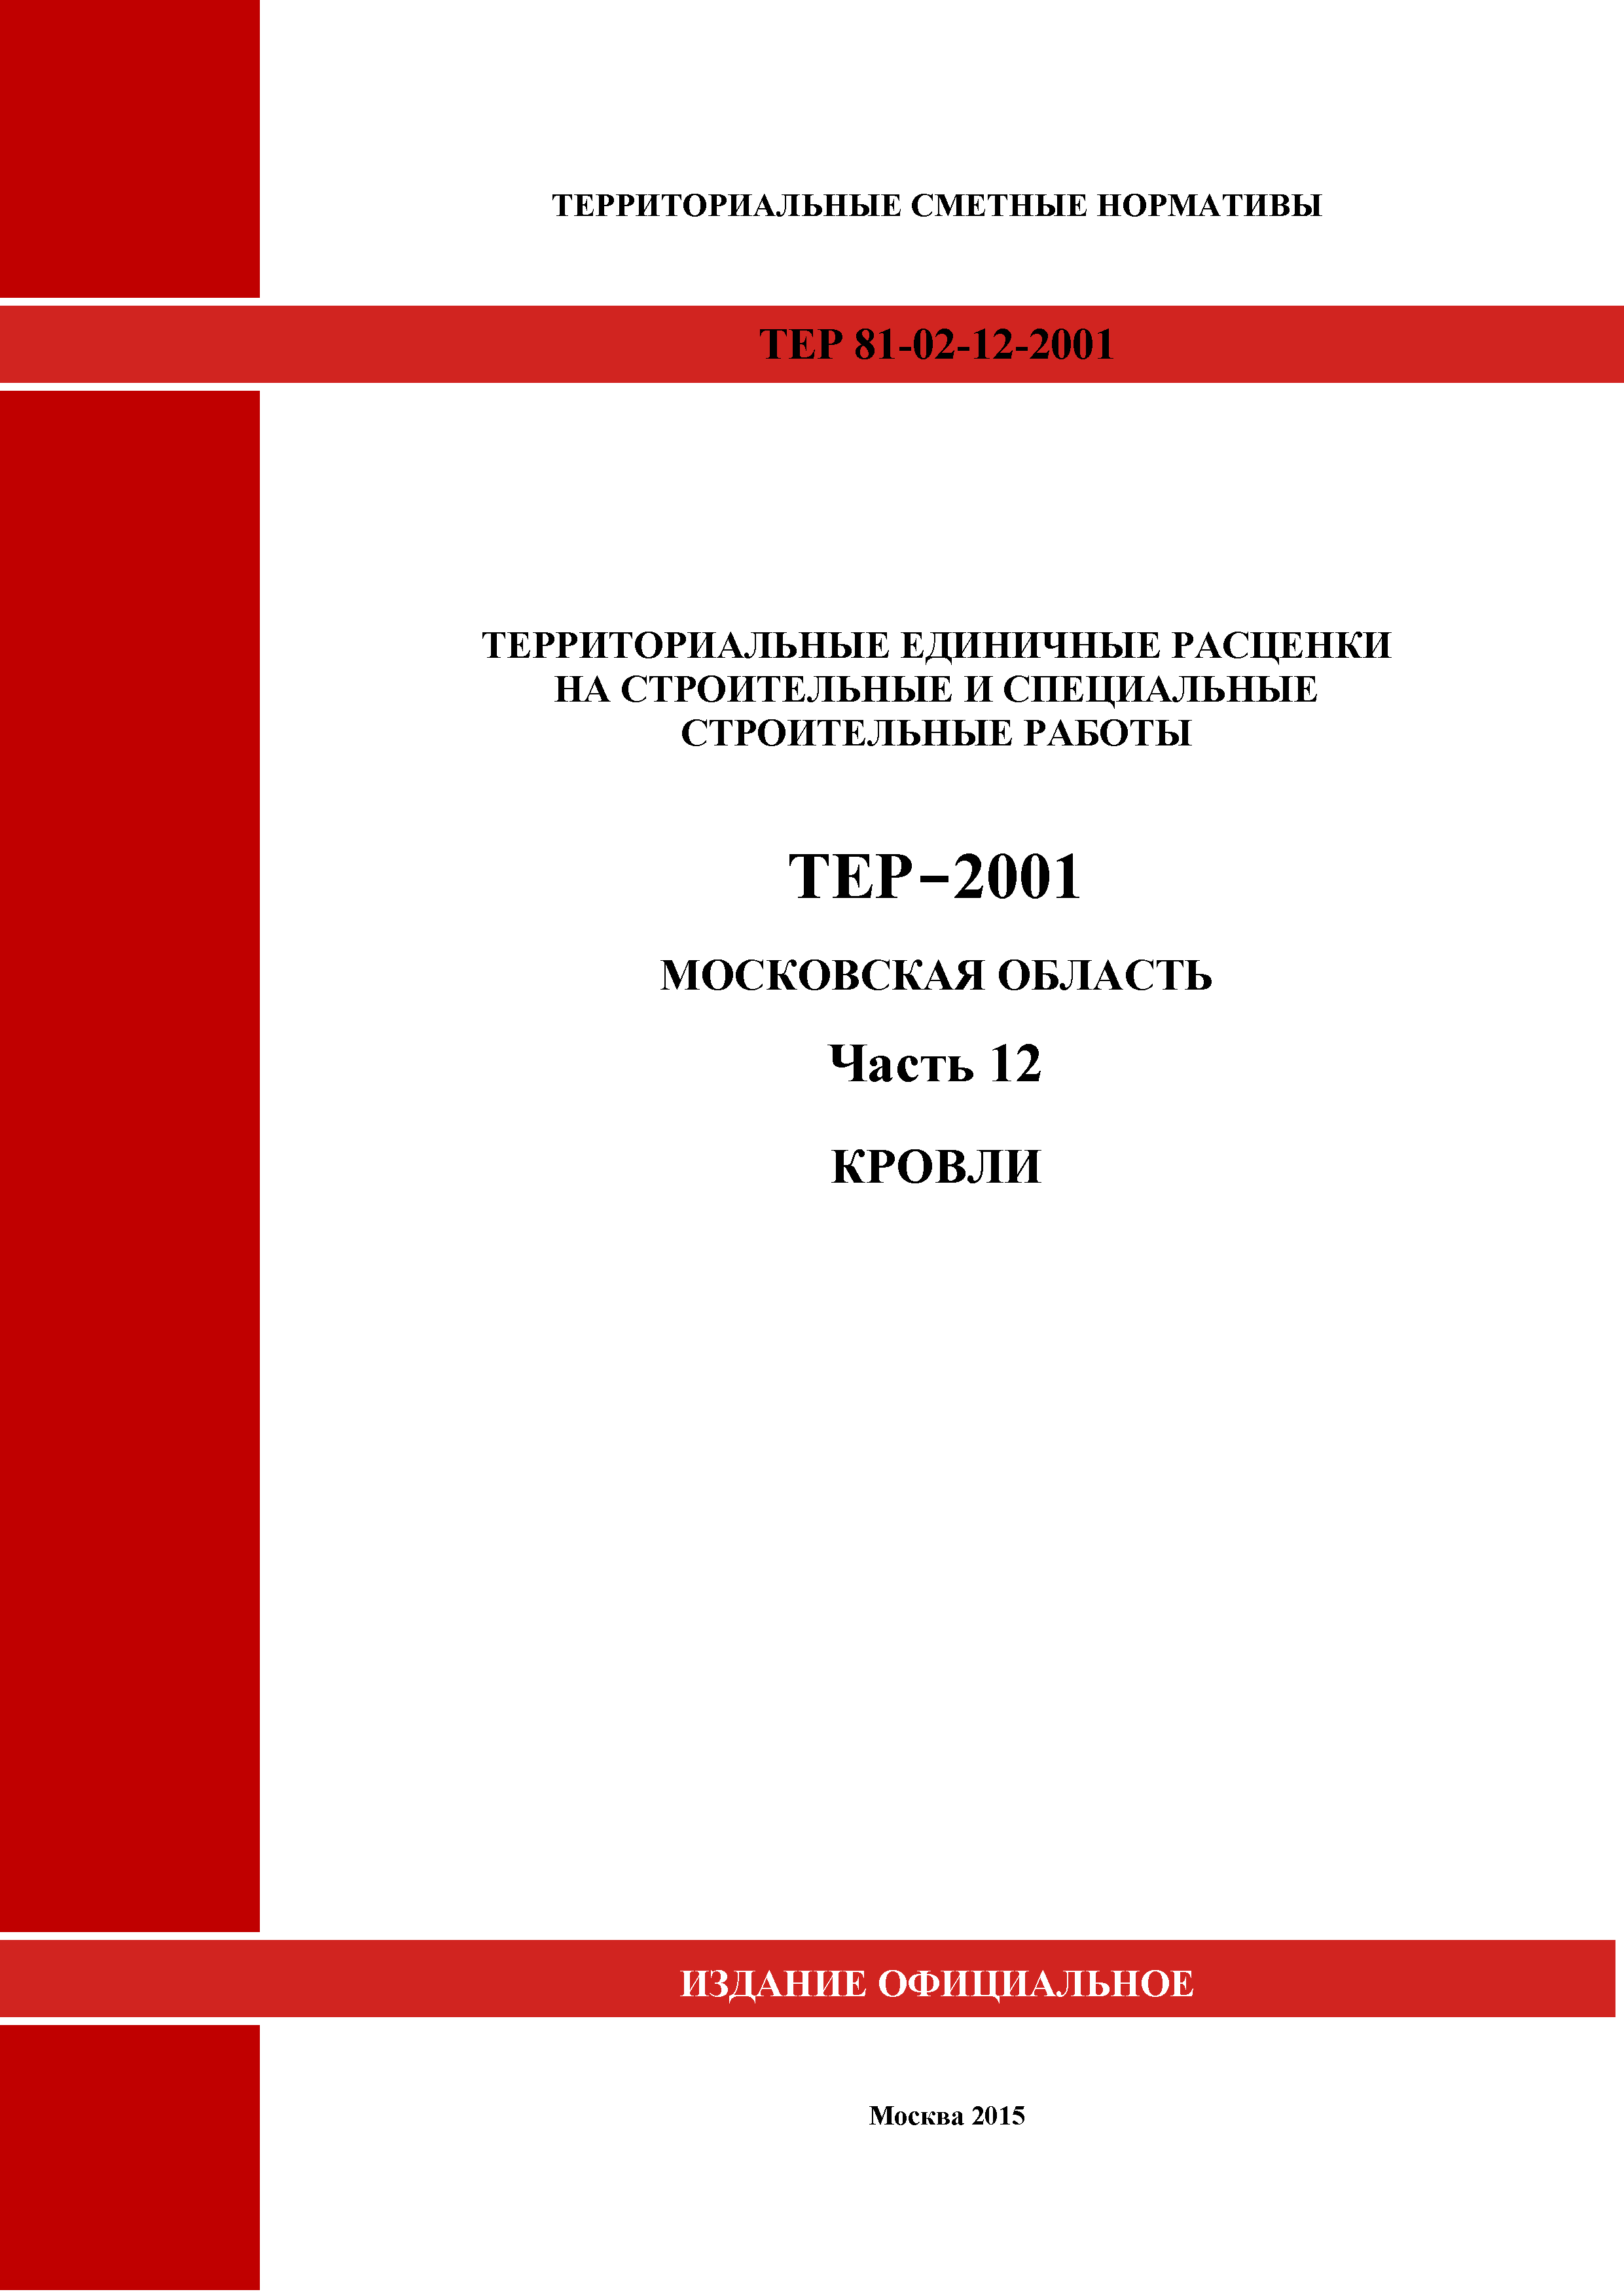 ТЕР 12-2001 Московской области